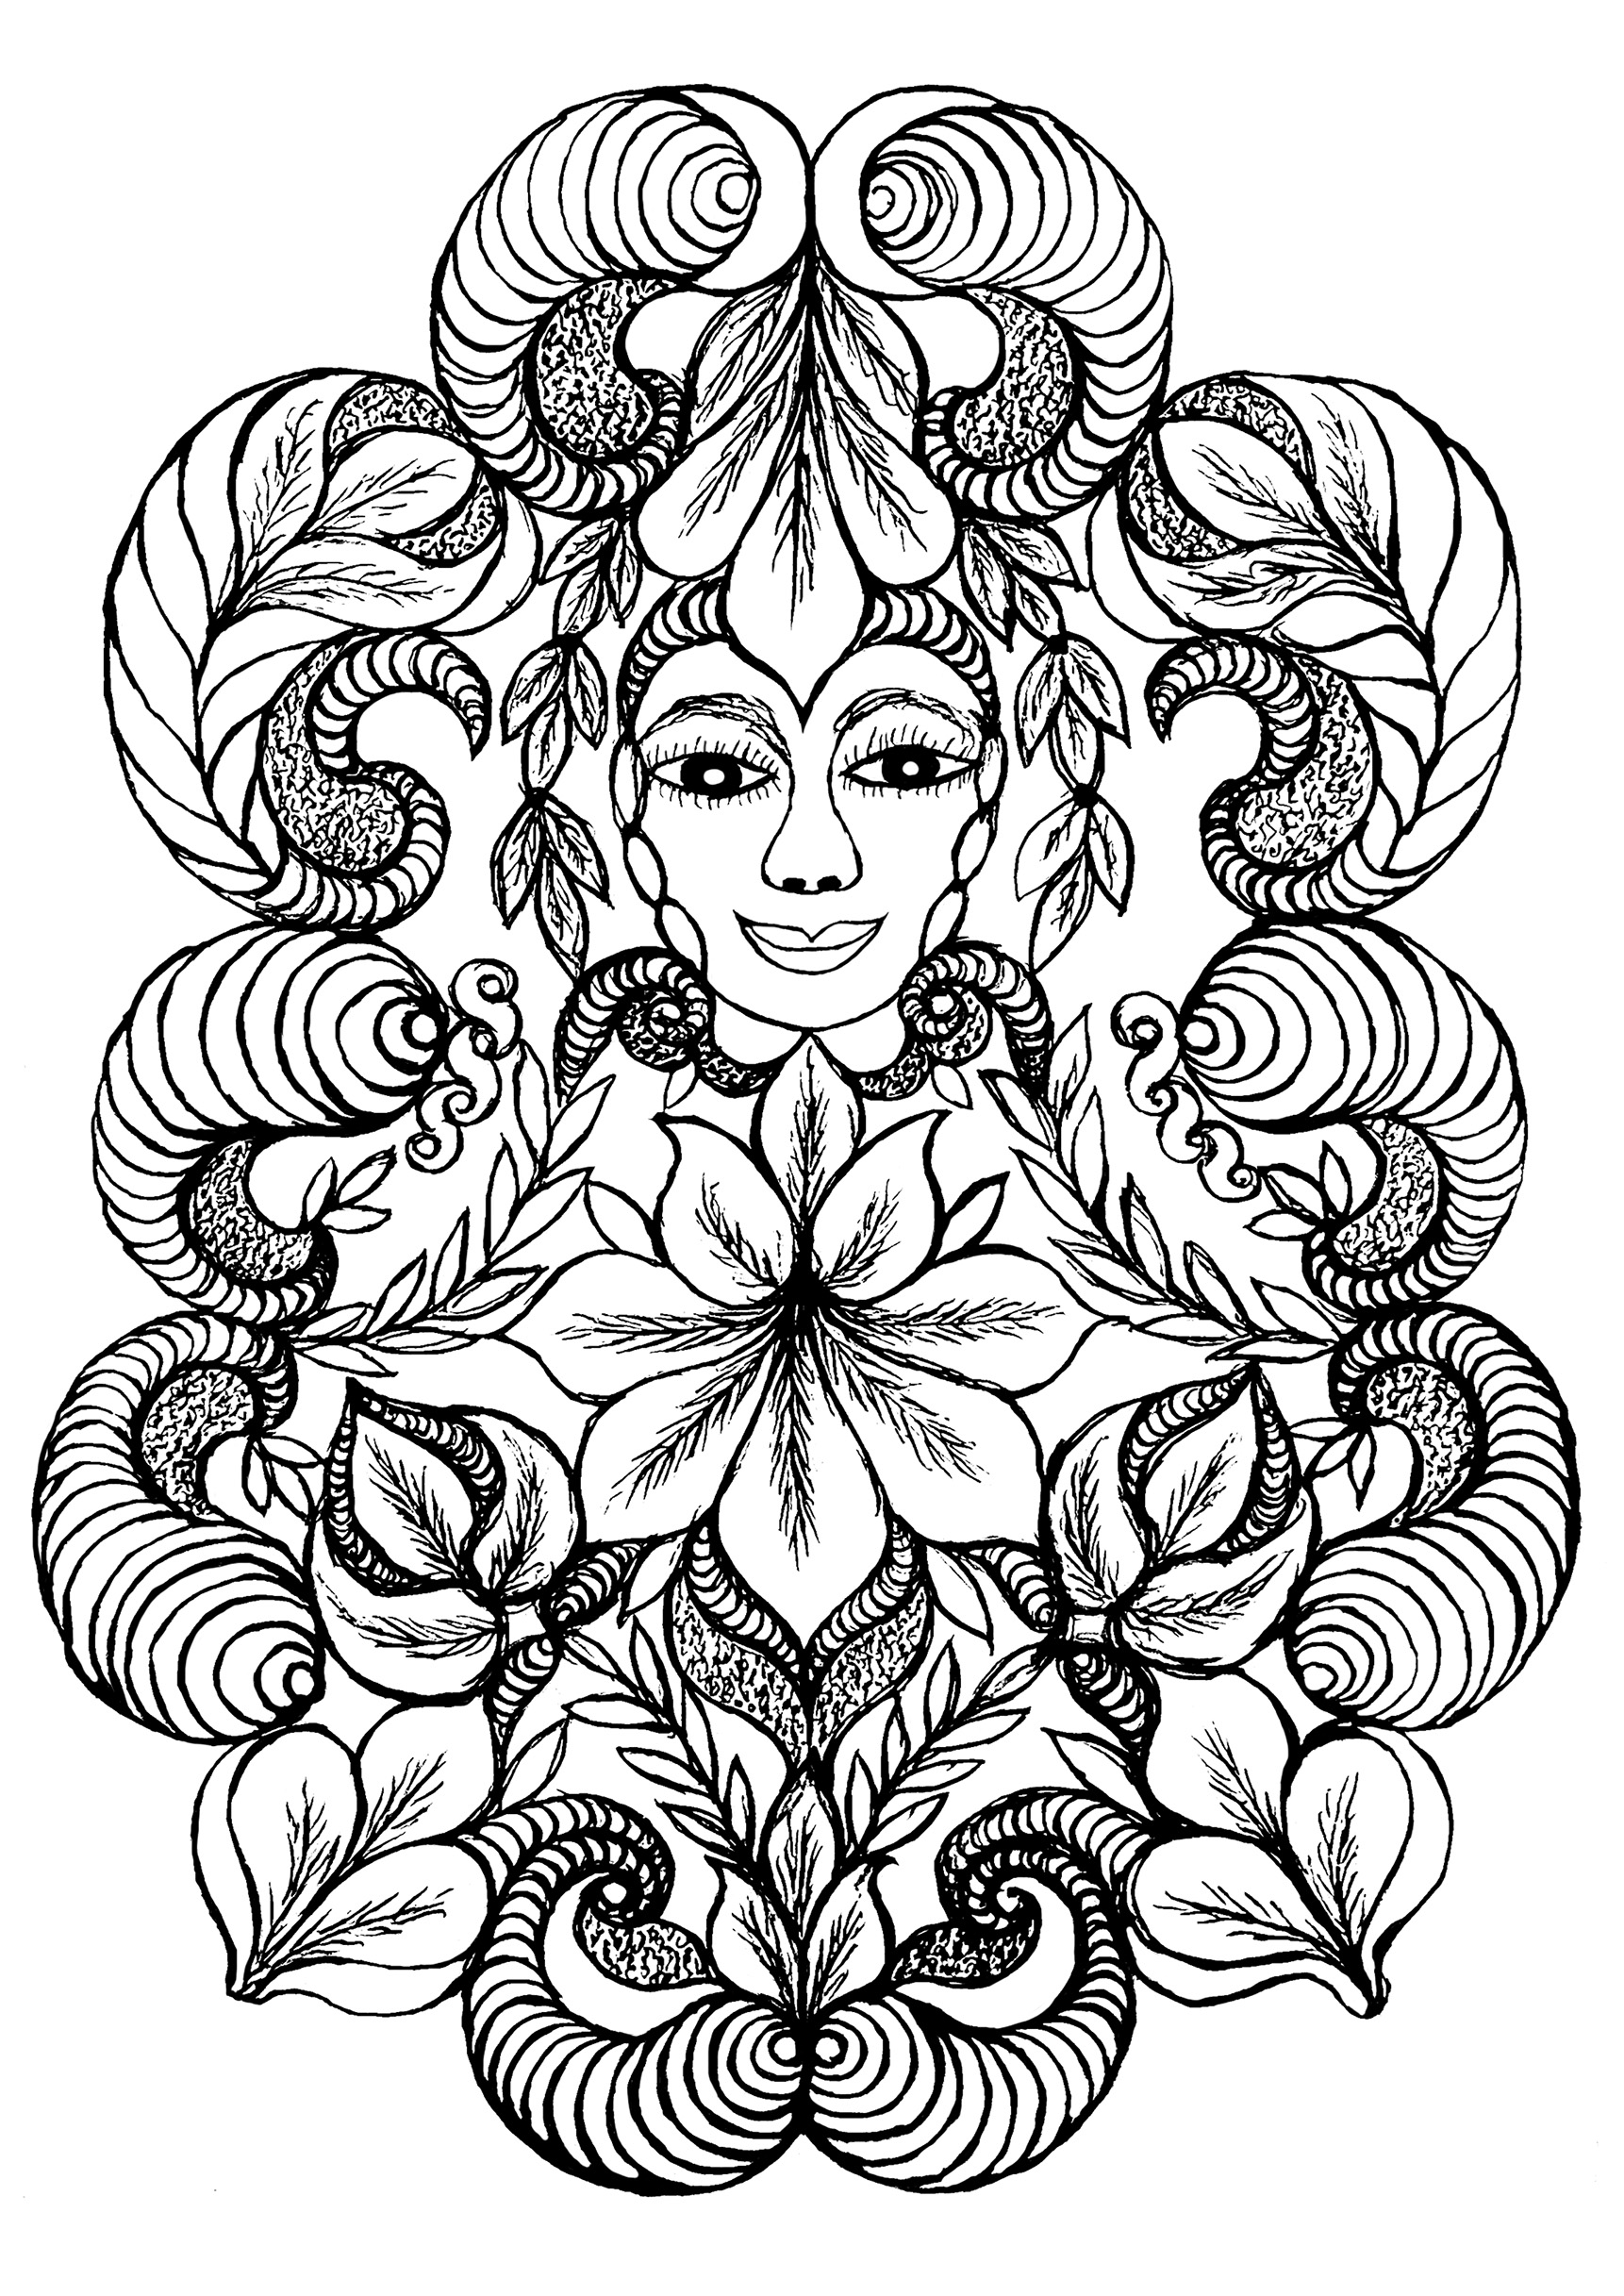 Femme fleur : un coloriage exclusif inspiré des peintures de Minnie Evans.  Les peintures et dessins colorés de Minnie Evans (1892, 1987) sont surréalistes sans intellectualisme ni conscience de soi.